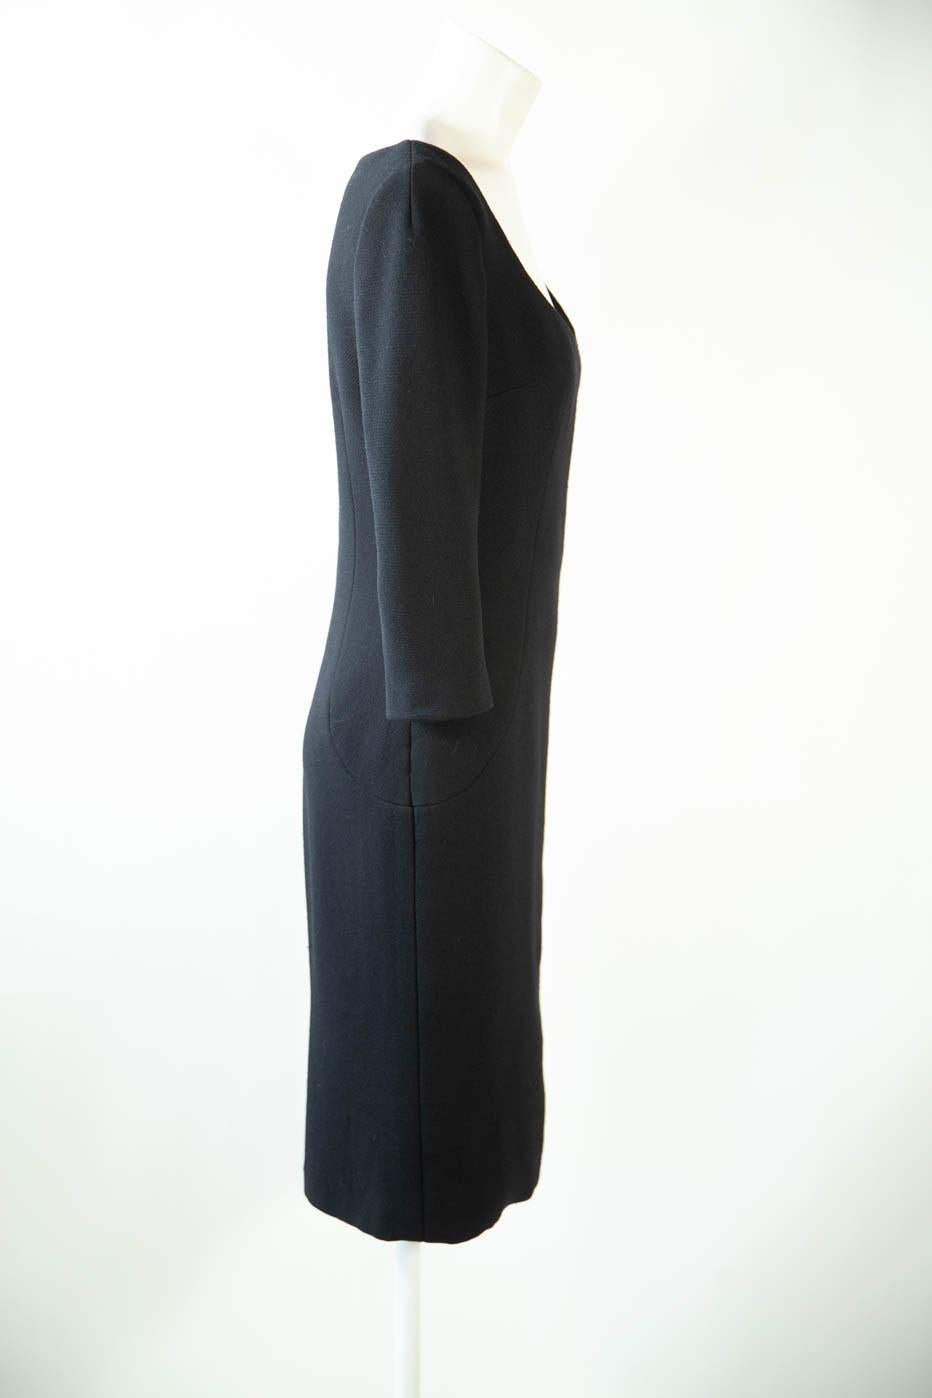 Schwarzes Kleid von Dolce & Gabbana mit 3/4-Ärmeln und Rundhalsausschnitt, knielang. 

Größe 42 / US Größe 6